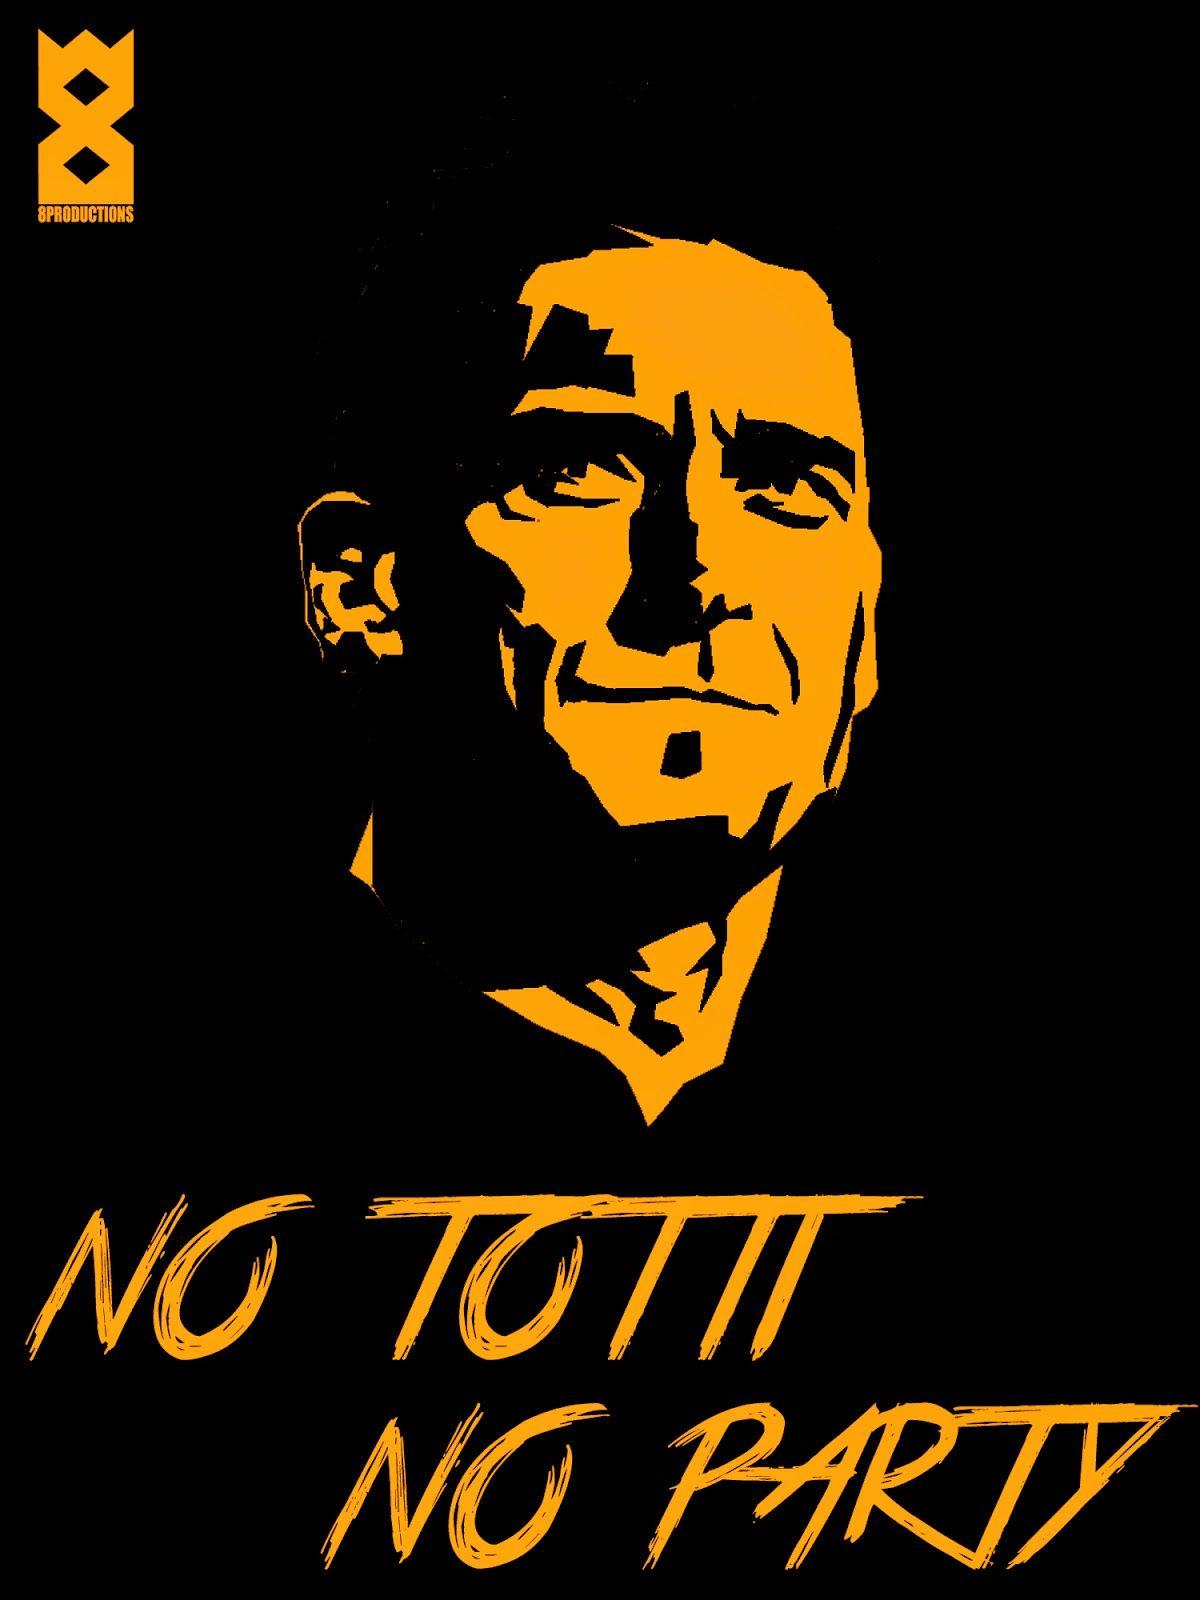 Productions: Francesco Totti wallpaper